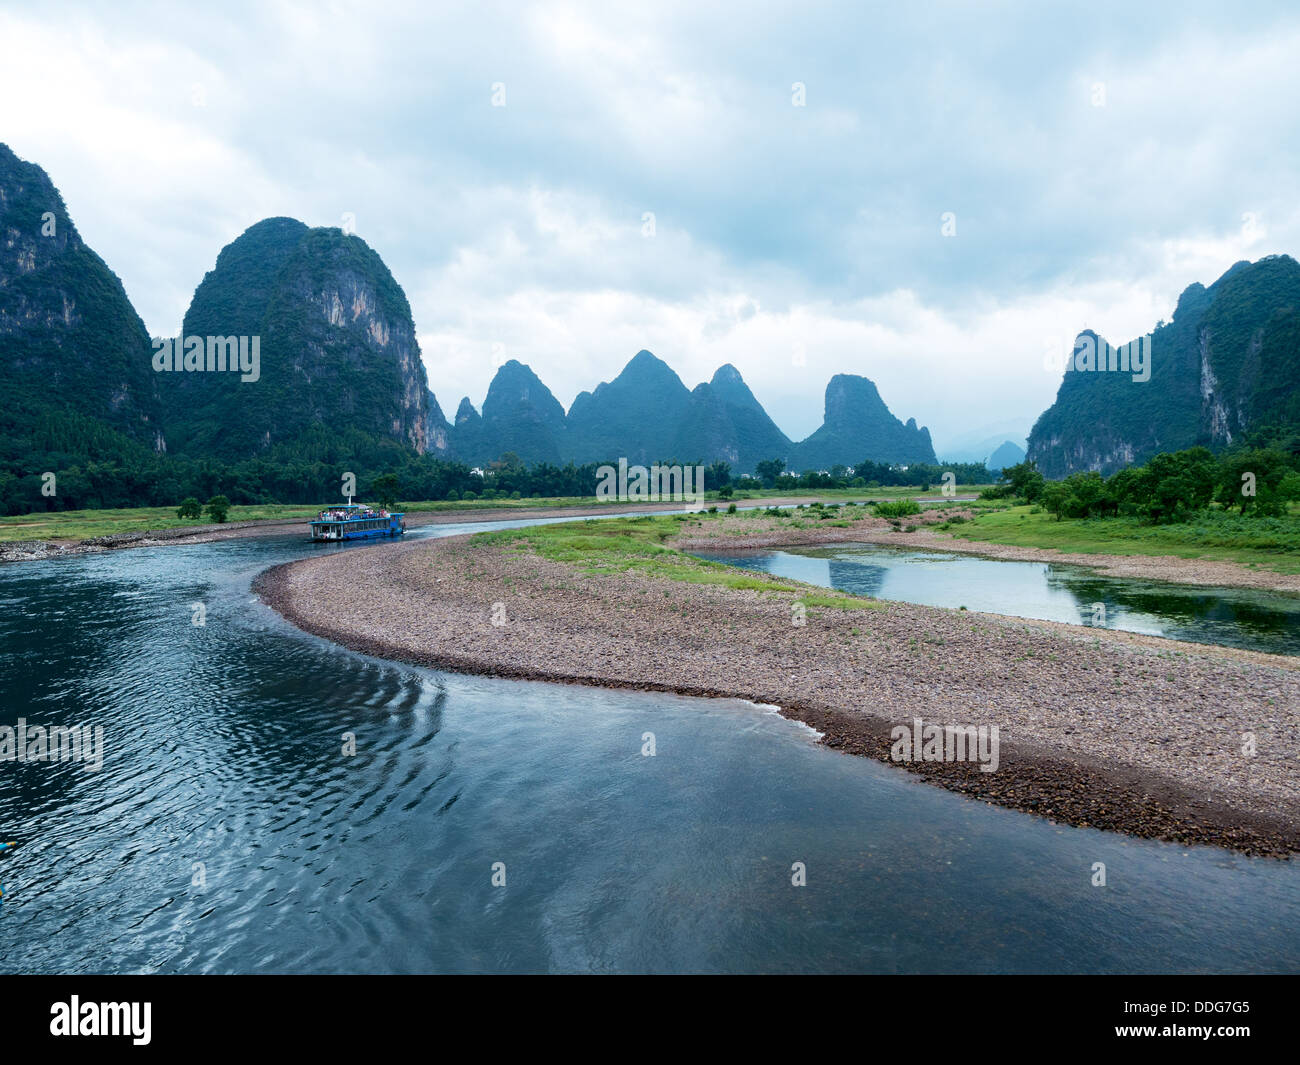 The Lijiang River landscape in Guilin,Guangxi, China Stock Photo